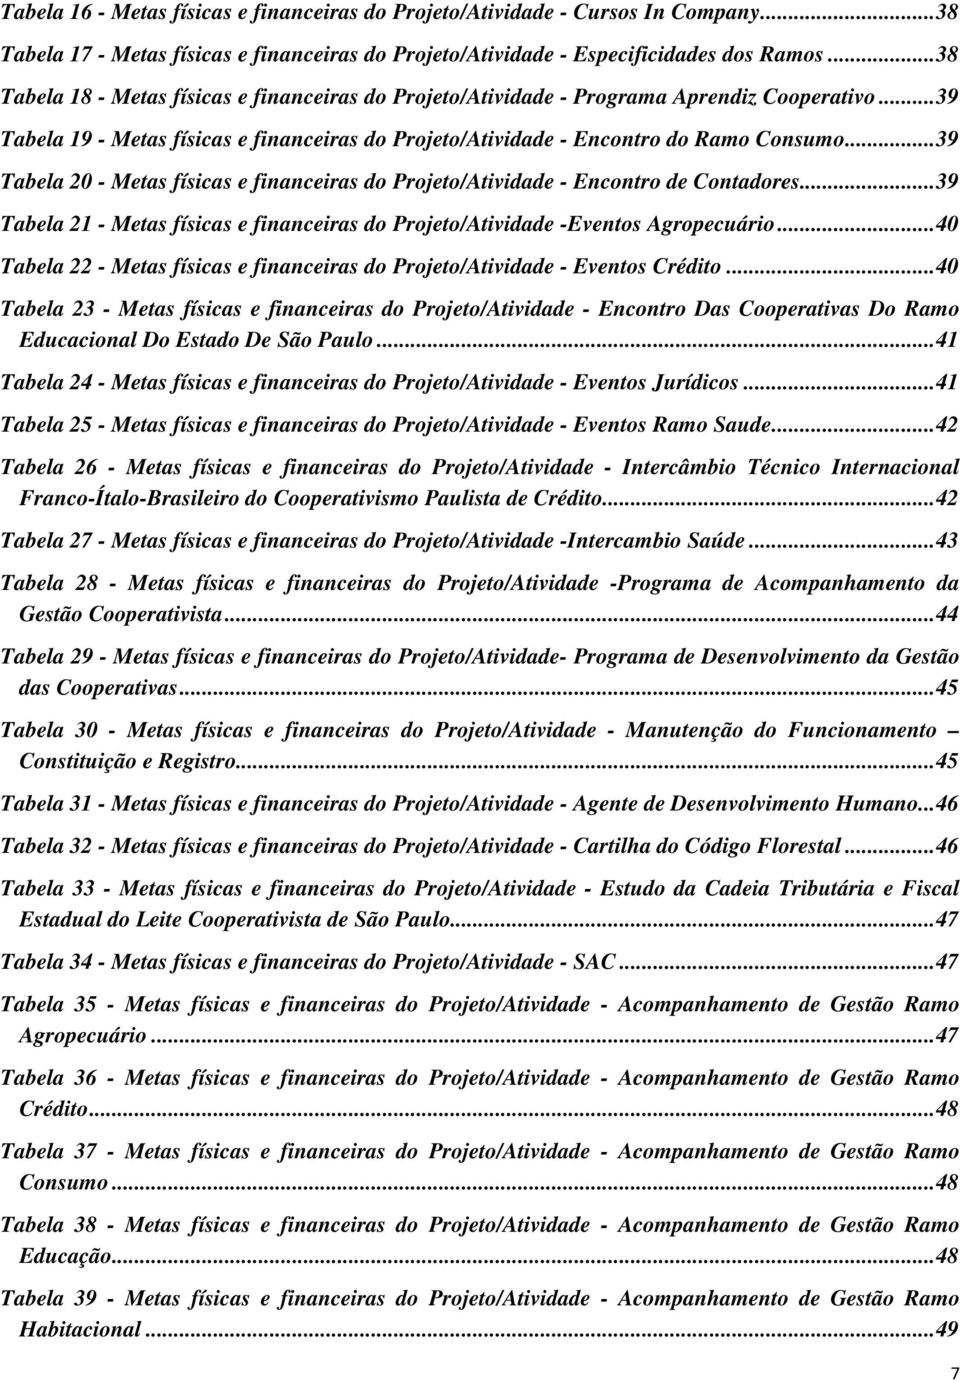 .. 39 Tabela 20 - Metas físicas e financeiras do Projeto/Atividade - Encontro de Contadores... 39 Tabela 21 - Metas físicas e financeiras do Projeto/Atividade -Eventos Agropecuário.